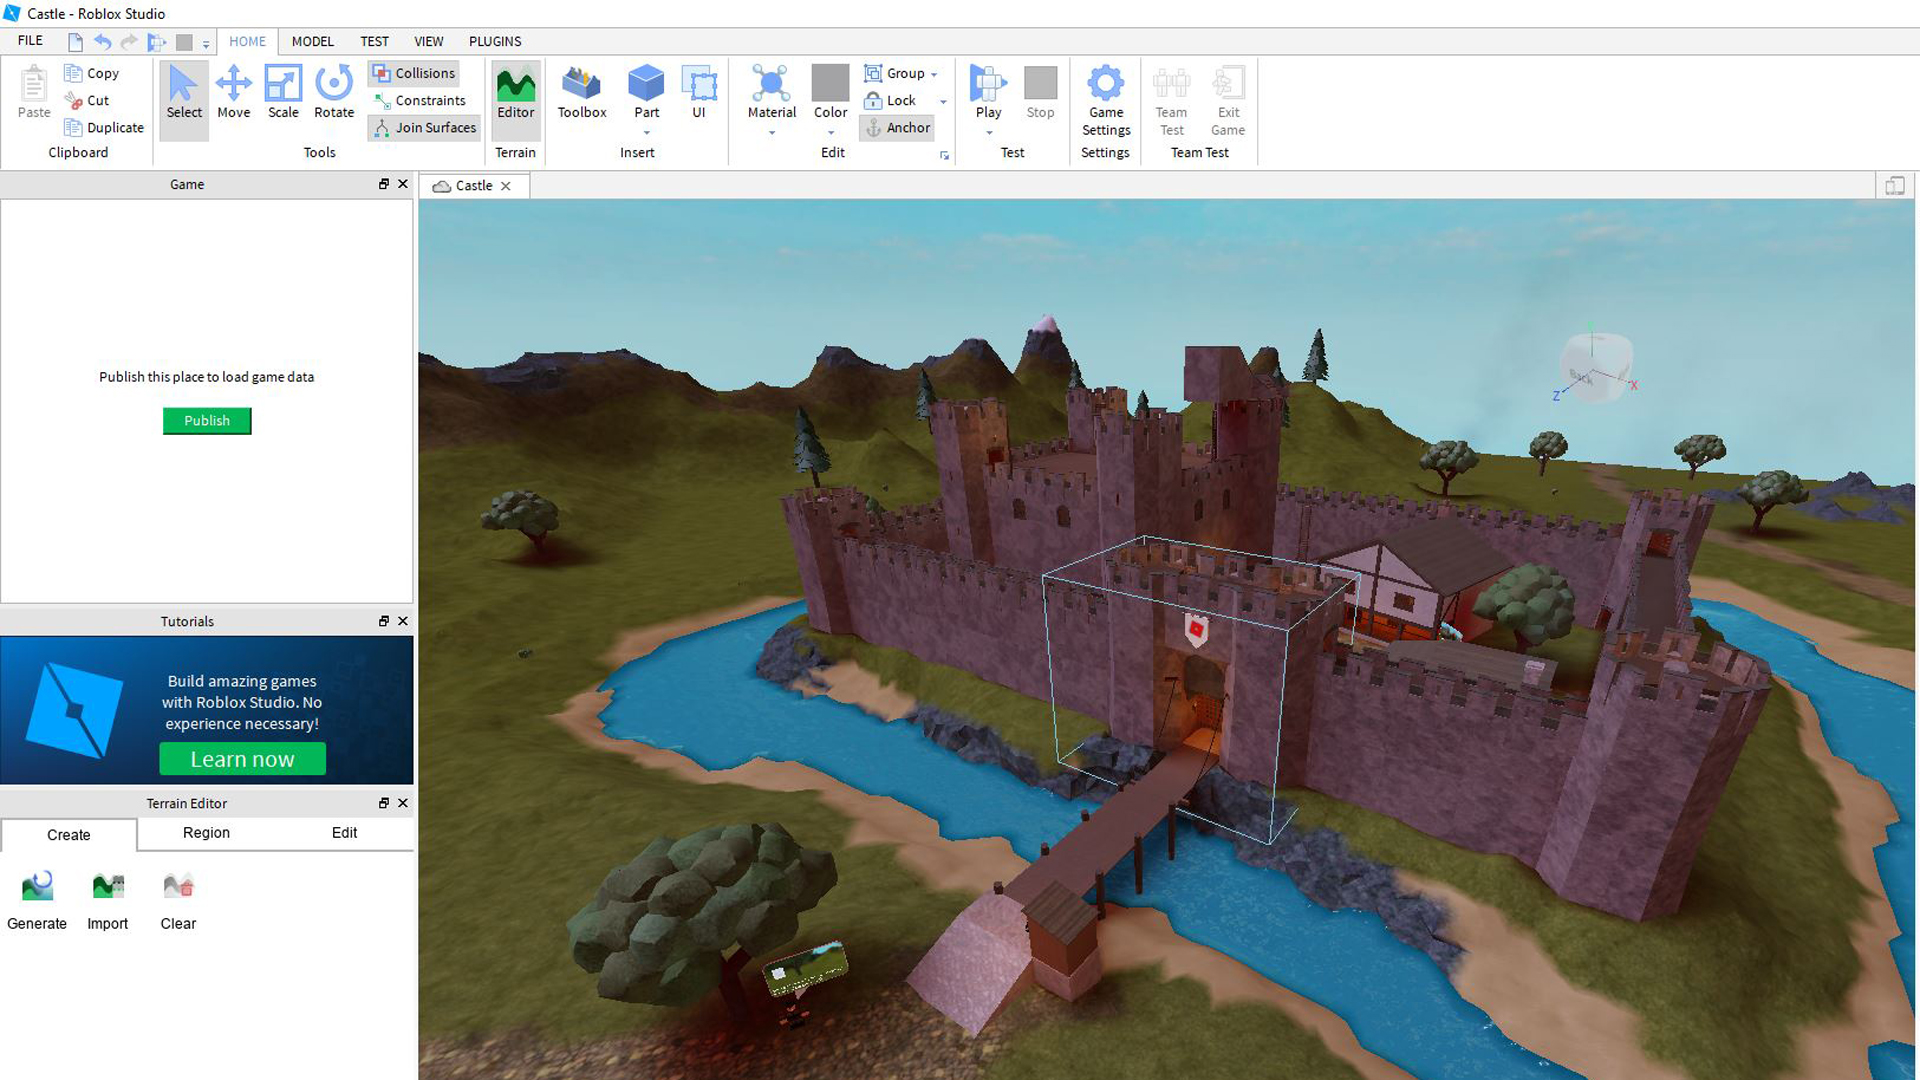 So sieht der Editor von "Roblox" aus, hier können eigene Games gebaut werden. Bild: Screenshot/Roblox